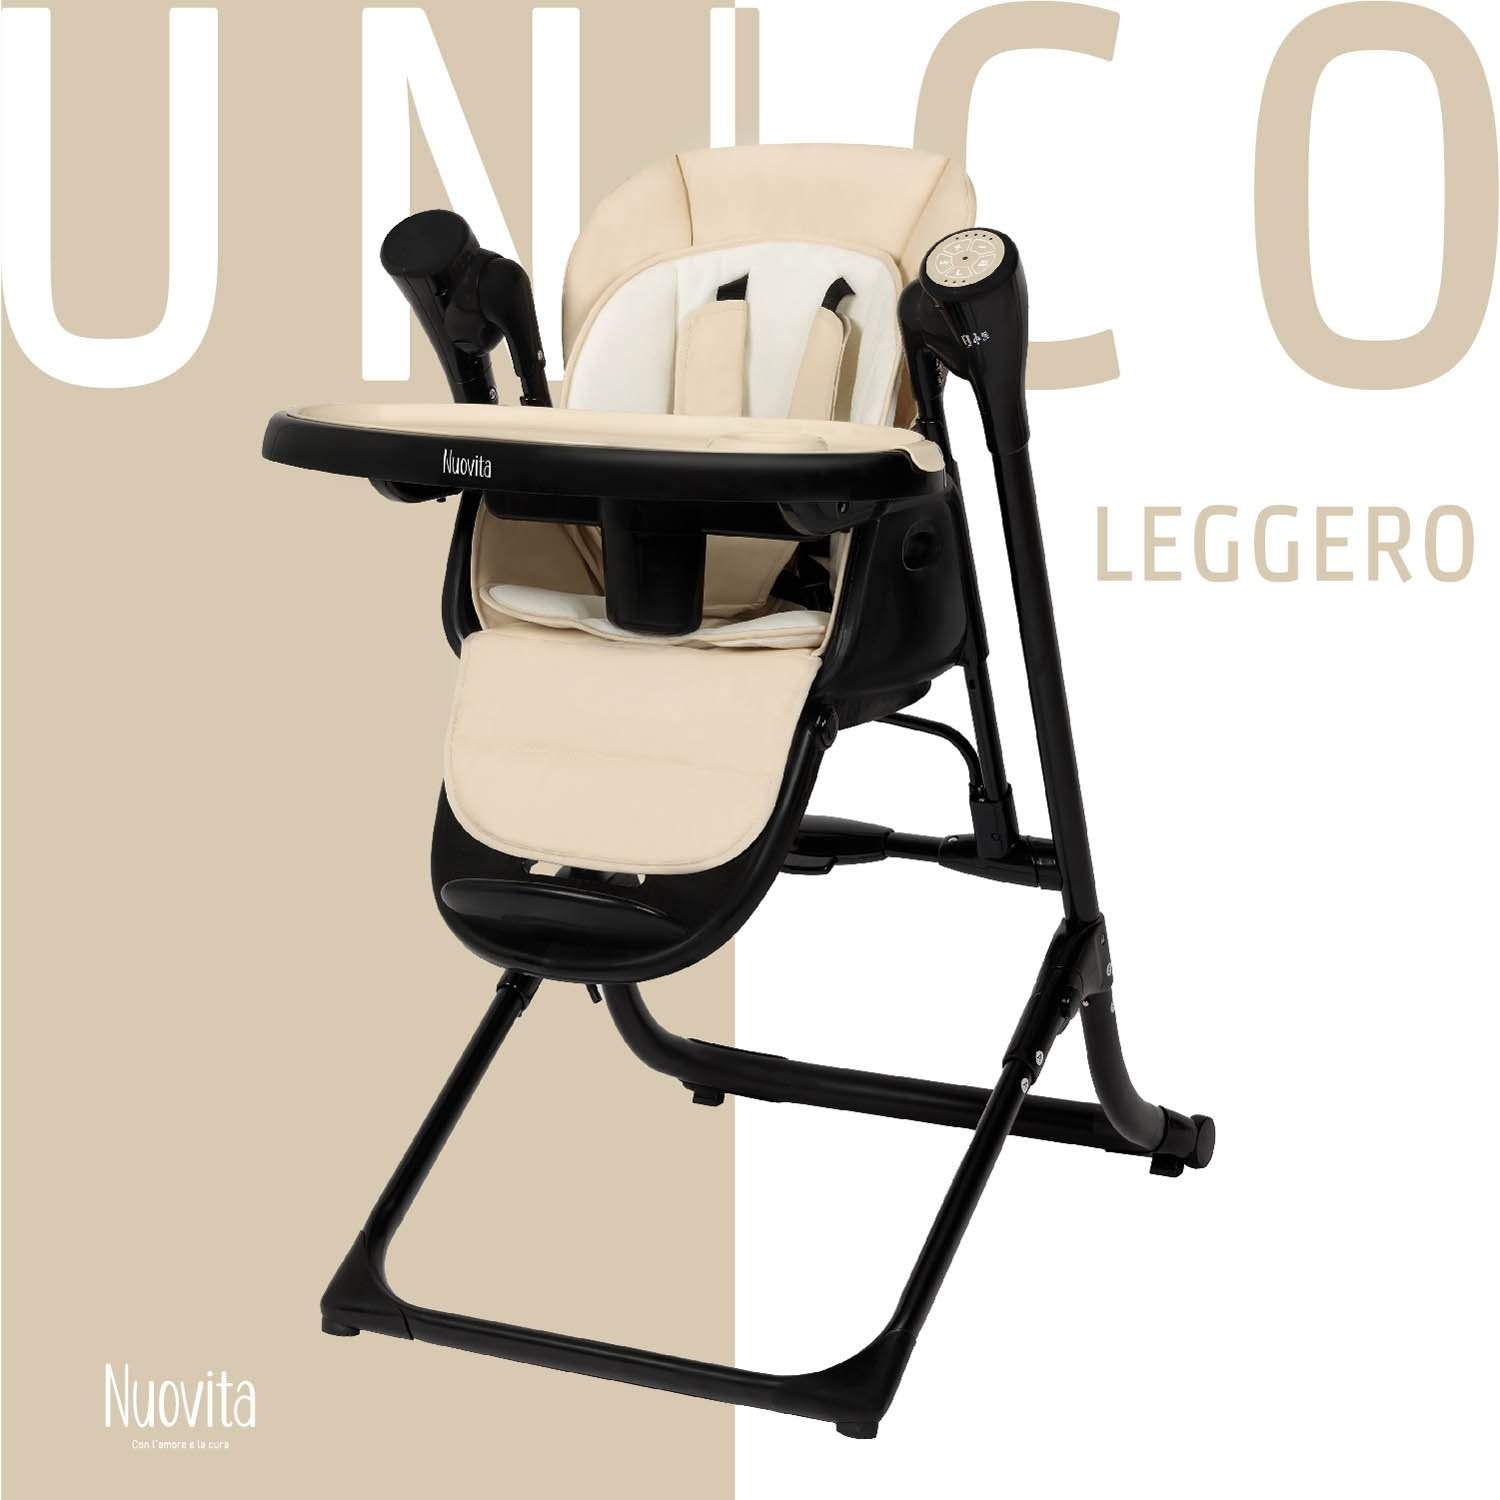 Стульчик для кормления с электронной функцией качения Nuovita Unico Leggero Nero латте стульчик для кормления nuovita fantasia latte латте